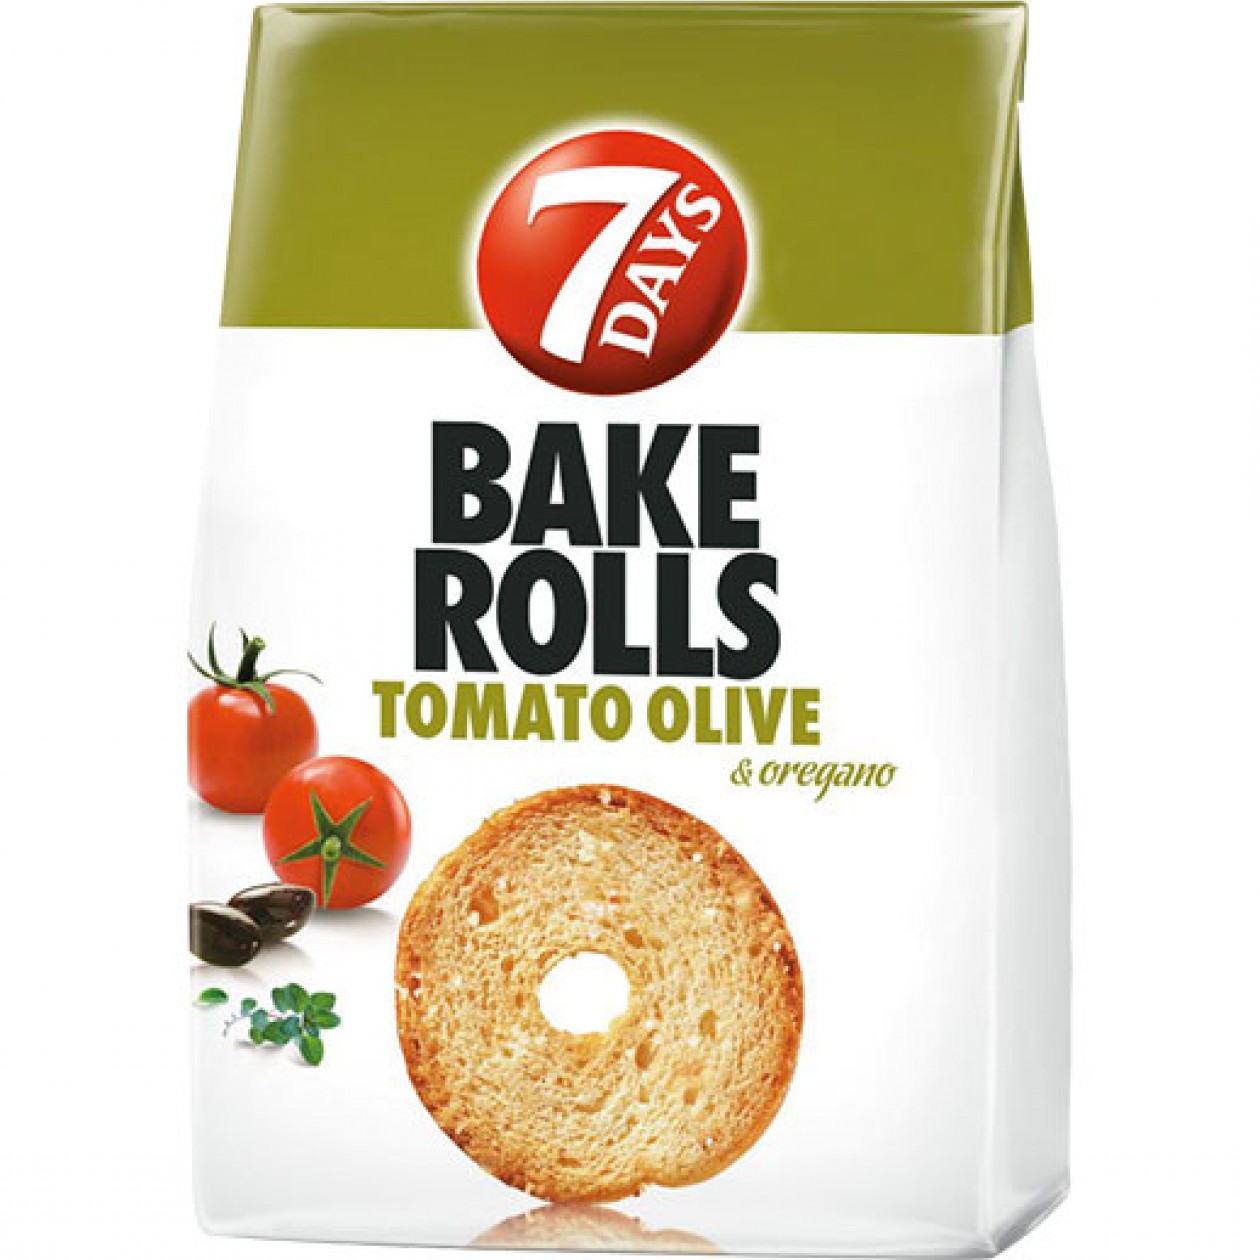 7 Days 80gx12 Bake Rolls Tomato & Oregano (64554)